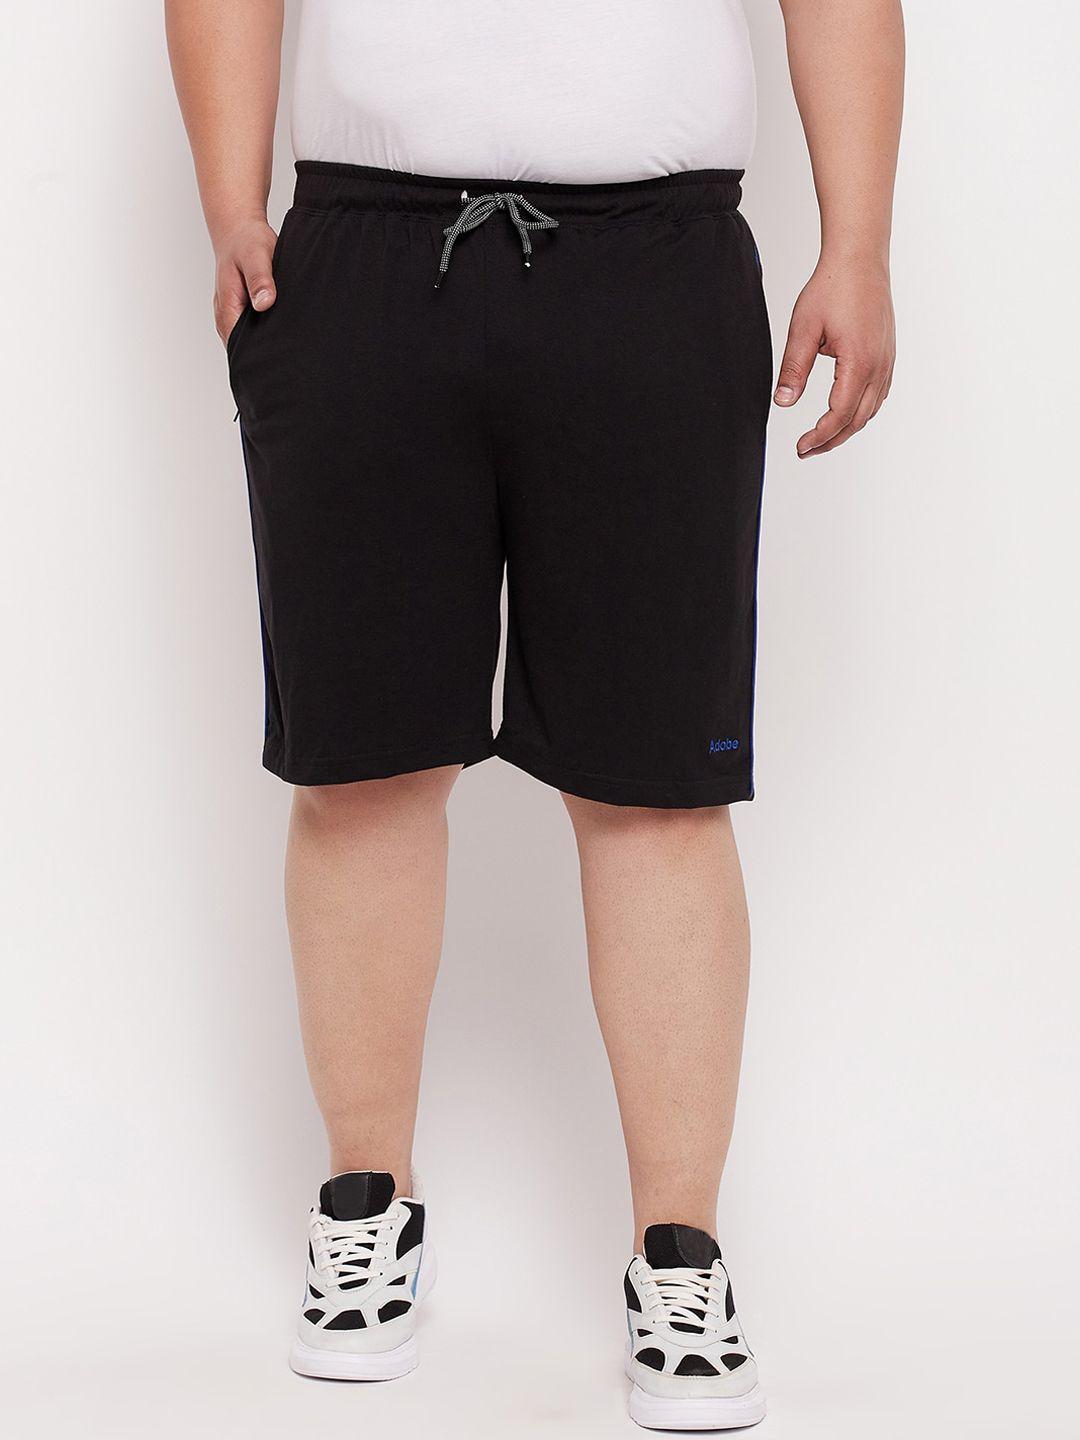 adobe-men-black-sports-shorts